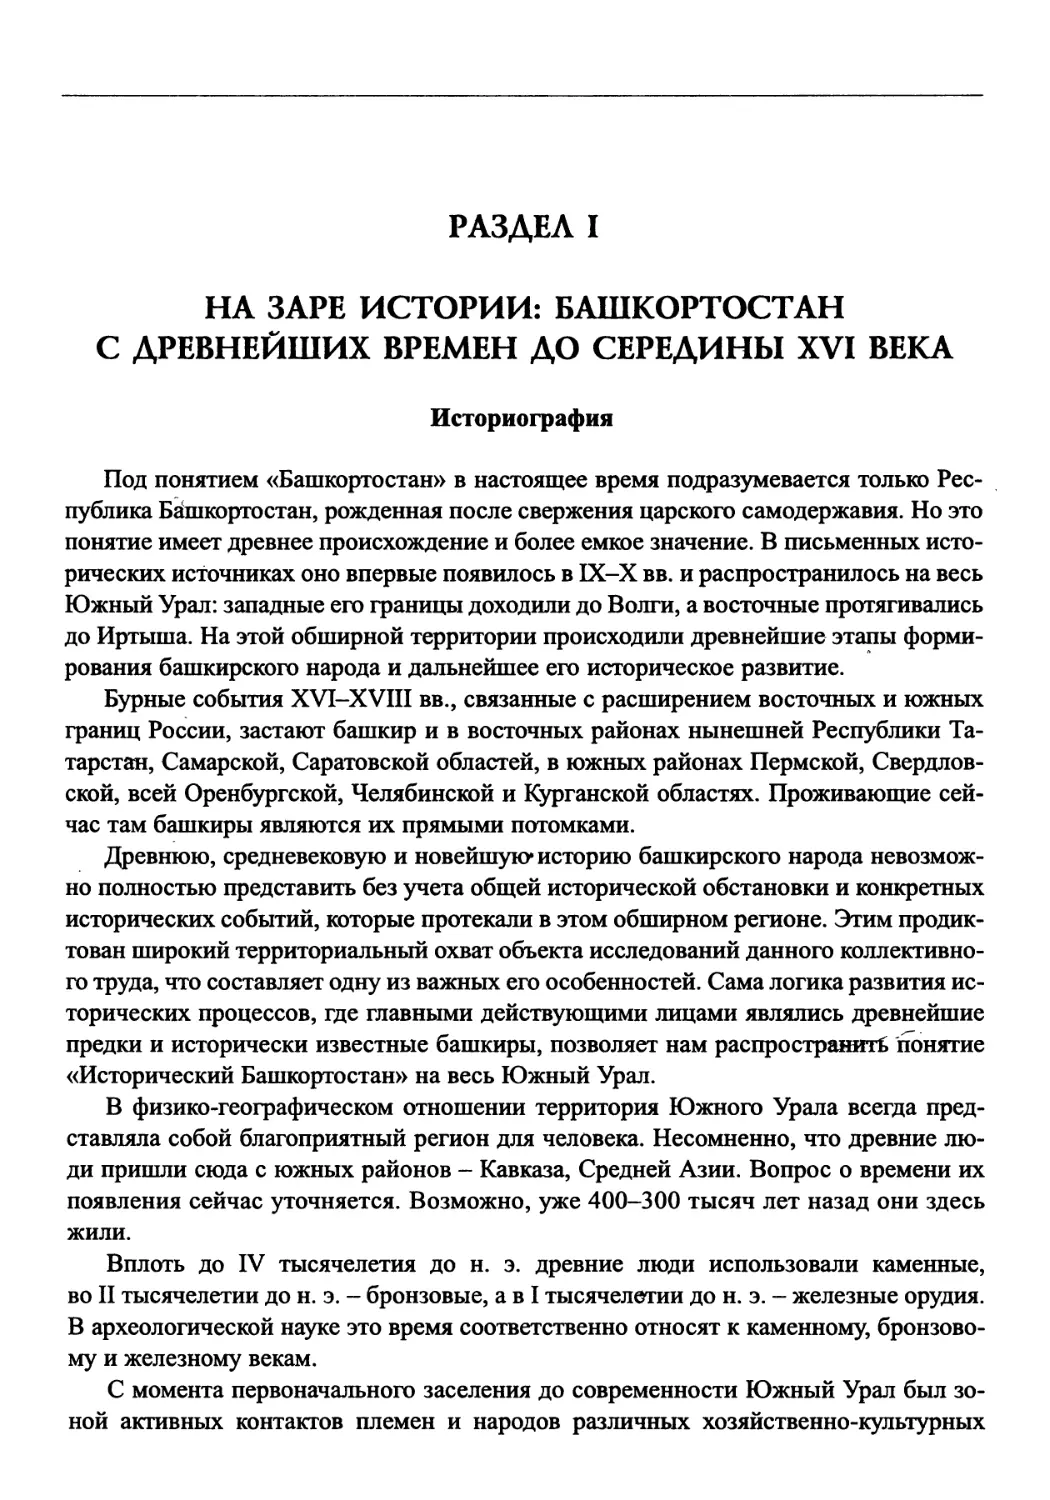 Раздел I. На заре истории: Башкортостан с древнейших времен до середины XVI века